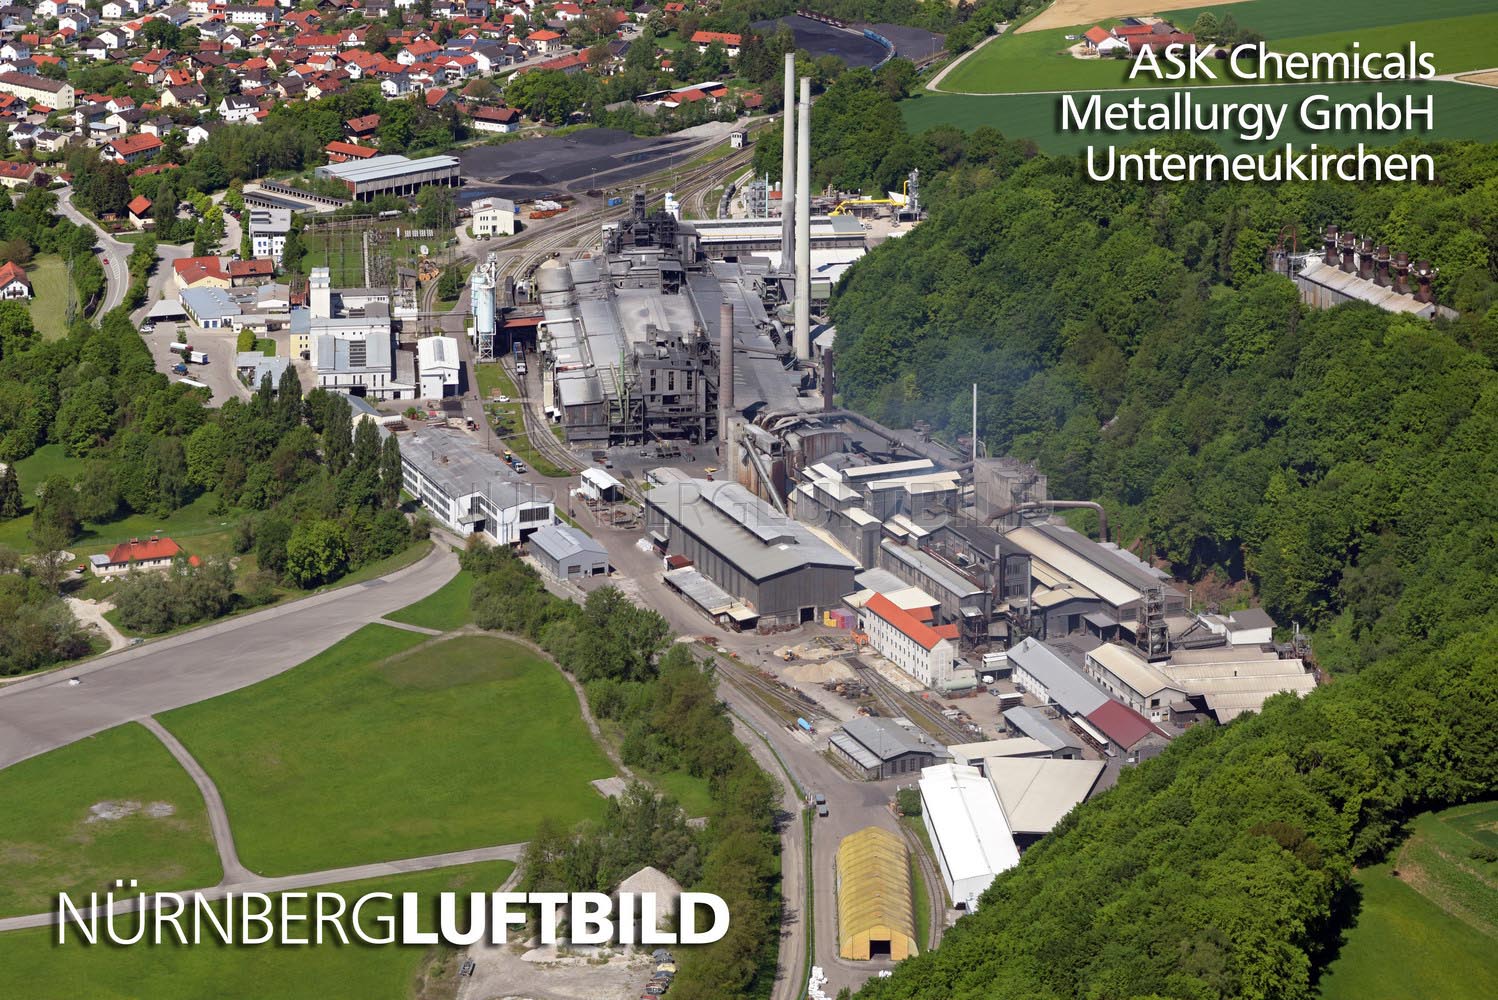 ASK Chemicals, Metallurgy GmbH, Unterneukirchen, Luftbild